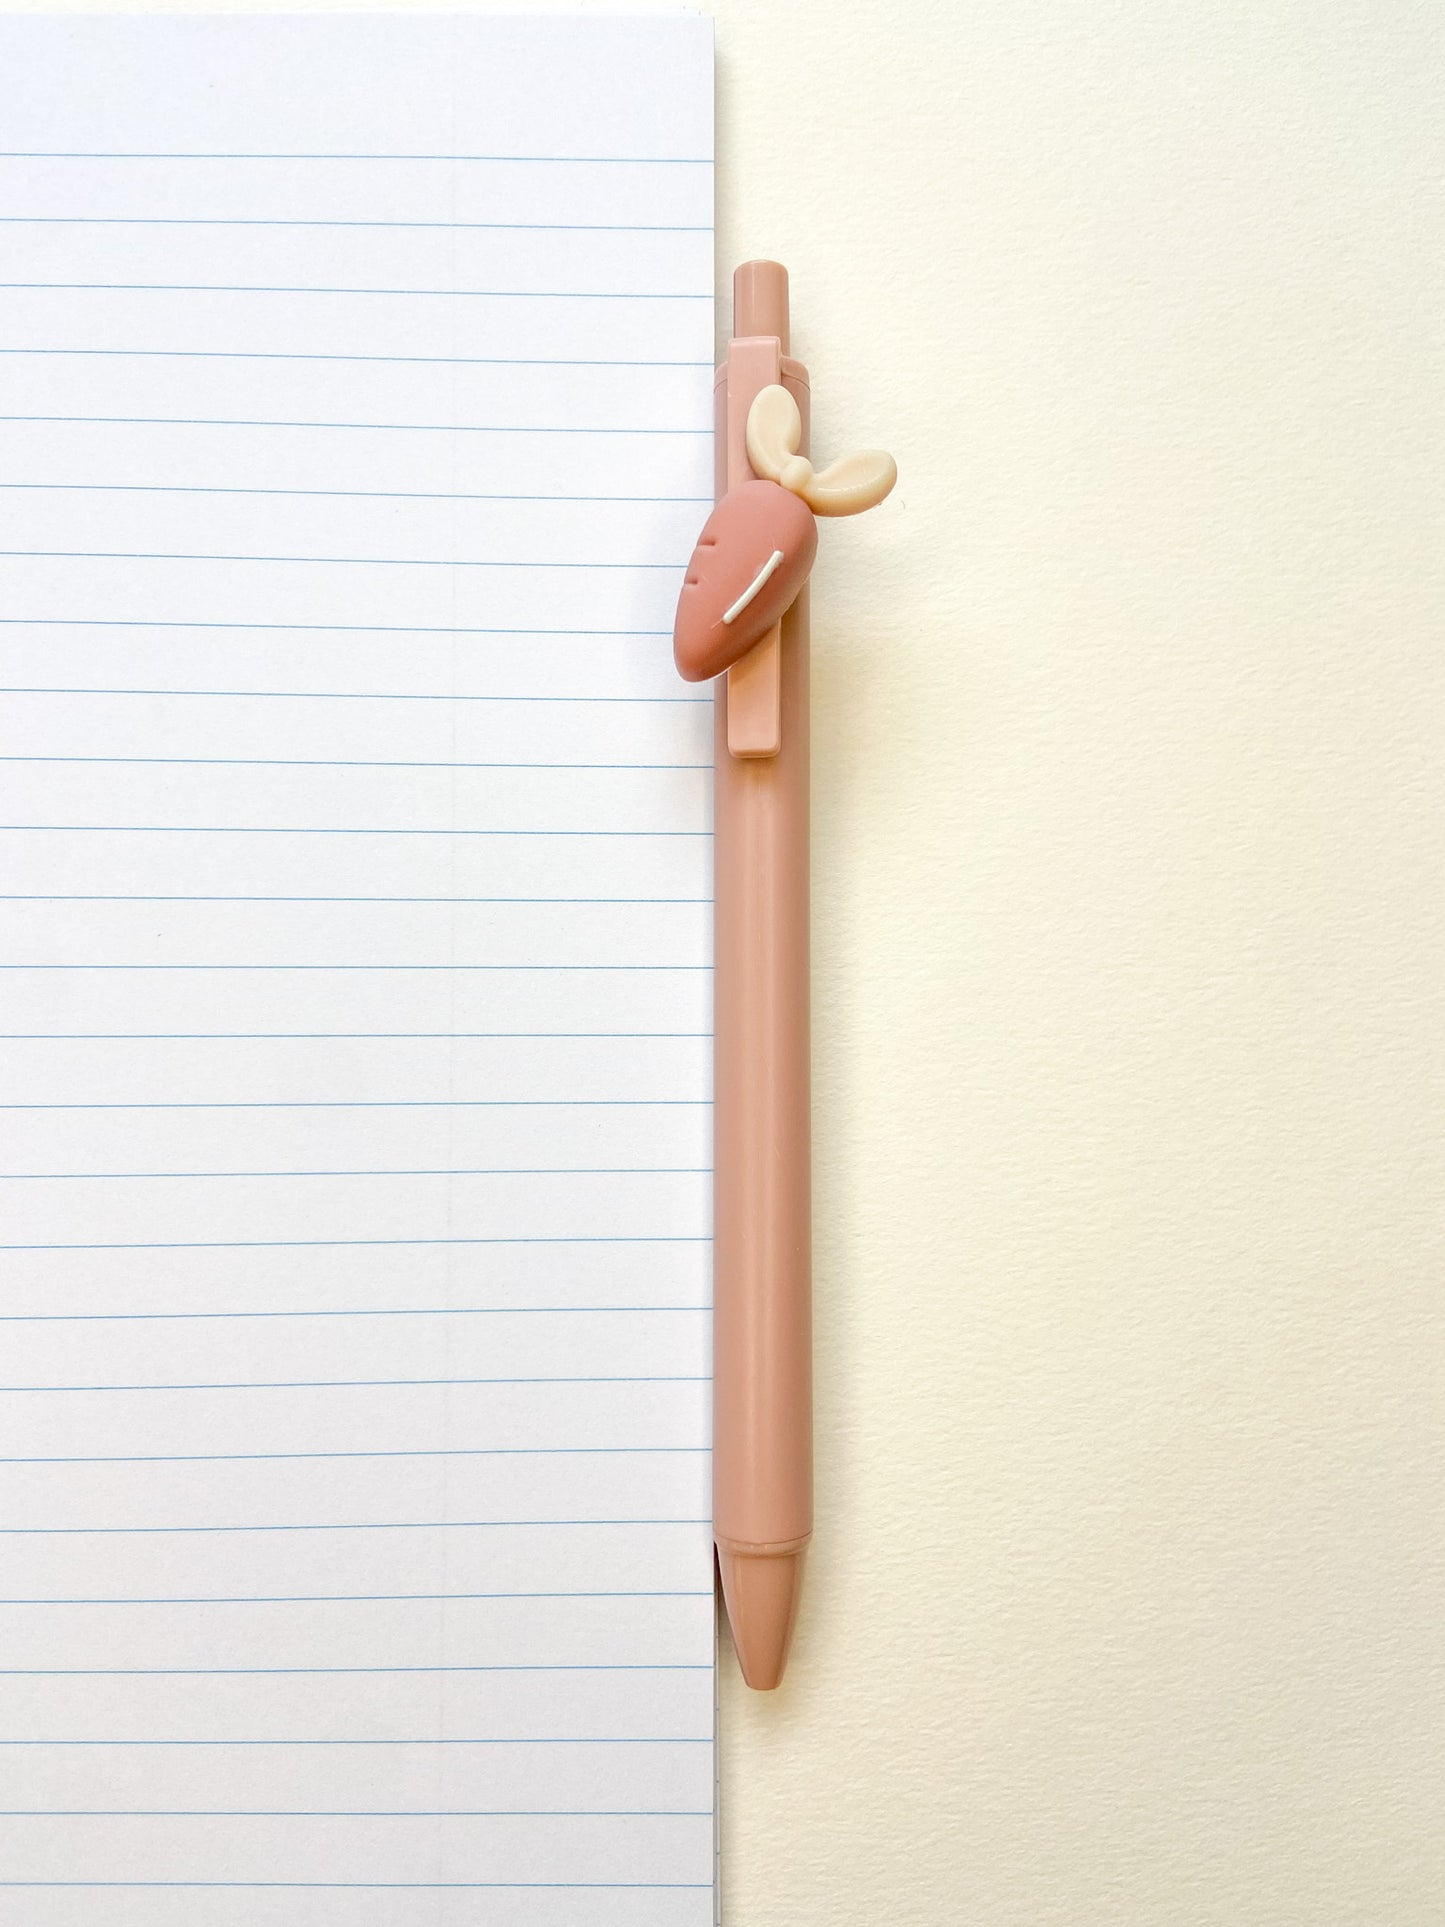 A 0.5mm Carrot Pink ballpoint pen